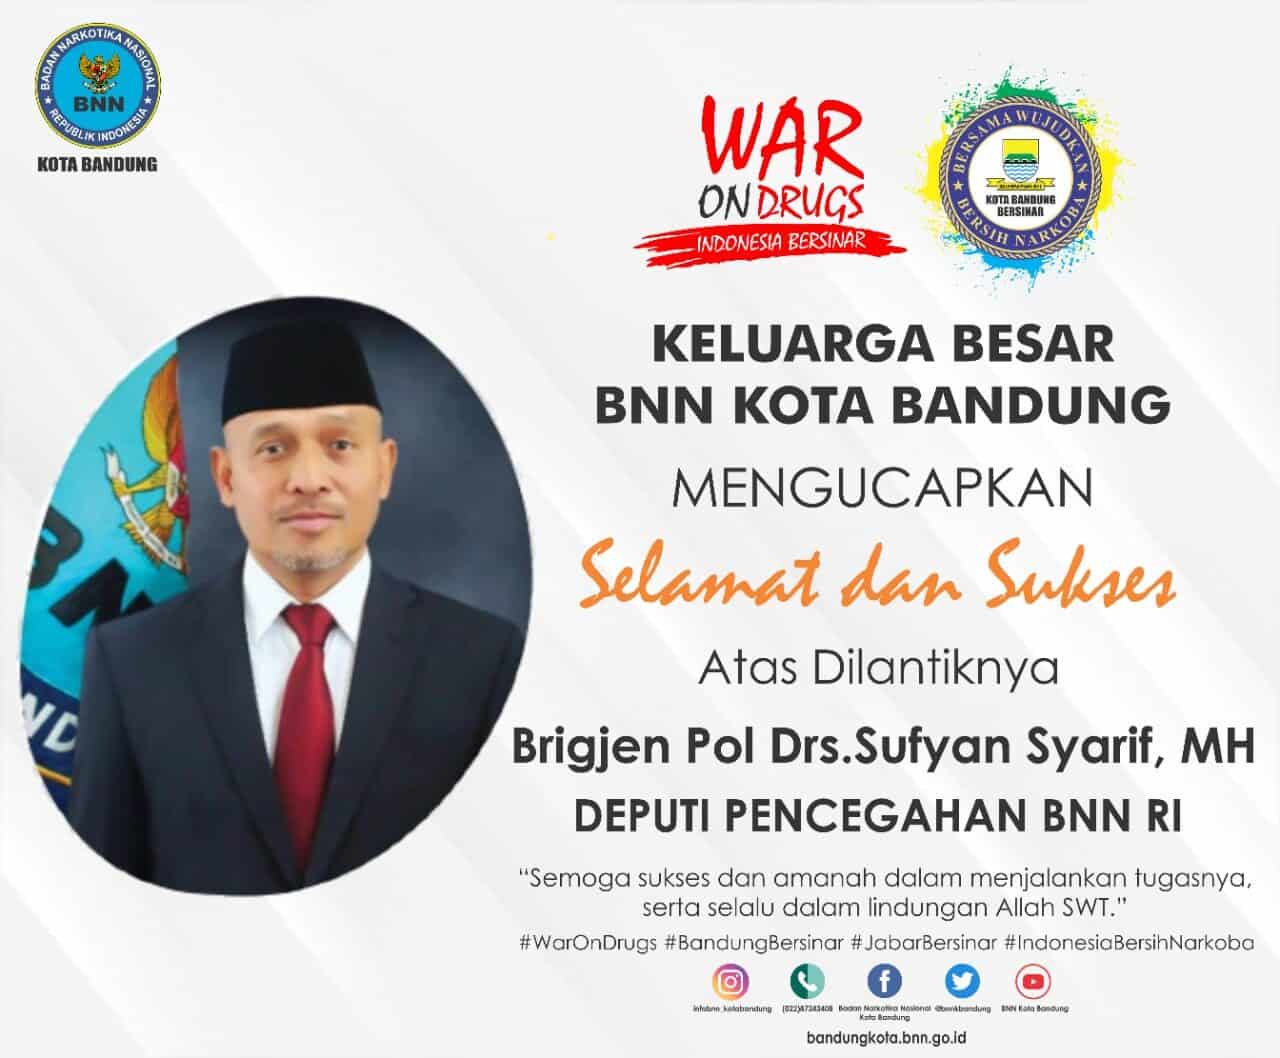 Selamat dan Sukses atas dilantiknya Brigjen Pol Drs. Sufyan Syarif, MH